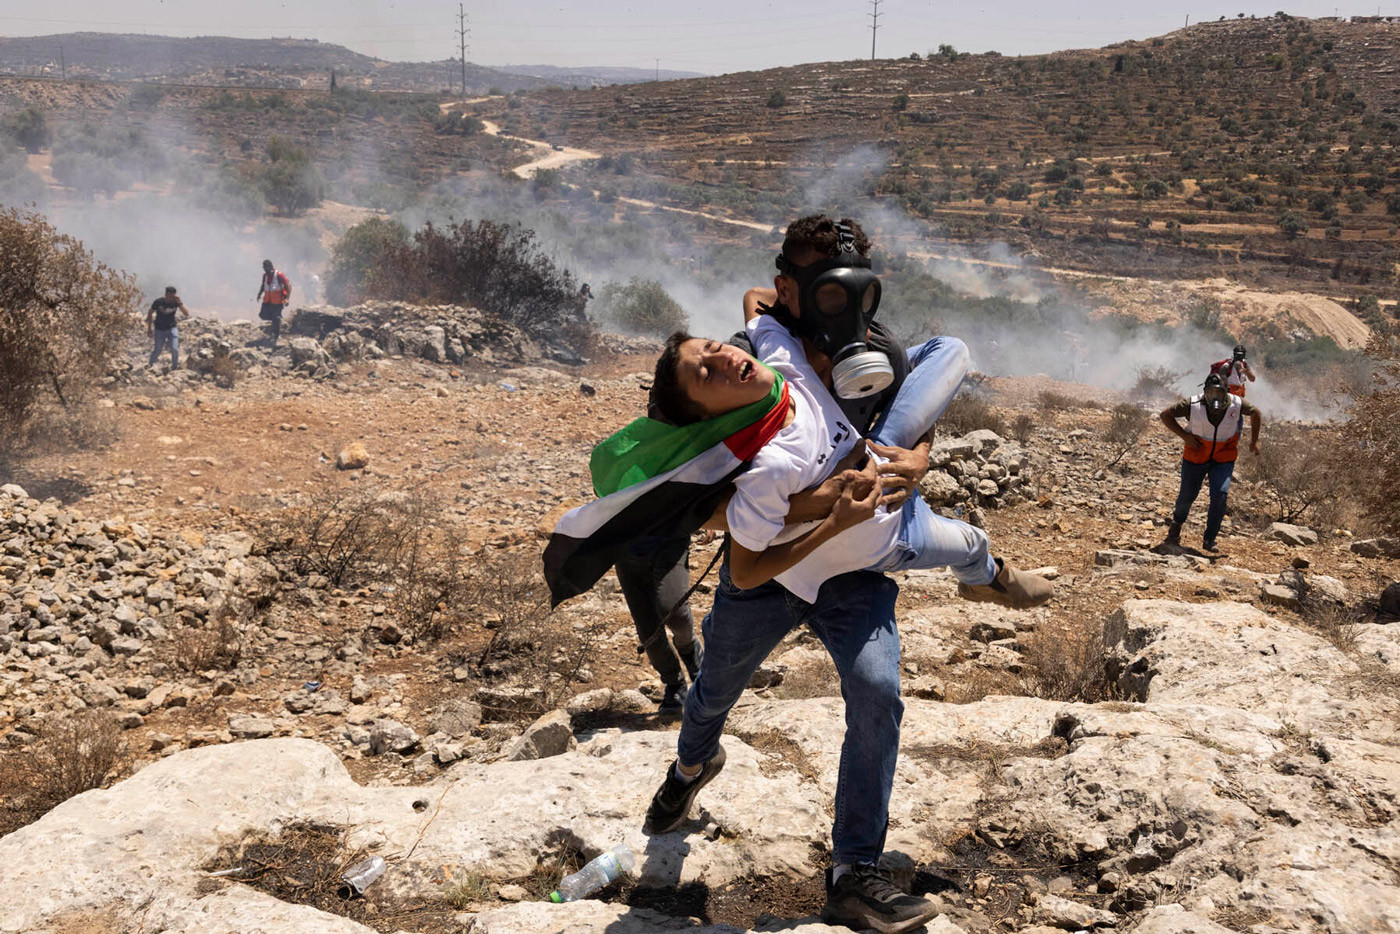 Протестующий эвакуирует ребенка, раненного израильским огнем во&nbsp;время демонстрации в&nbsp;Бейте. Фотография Орена Зива/ActiveStills.